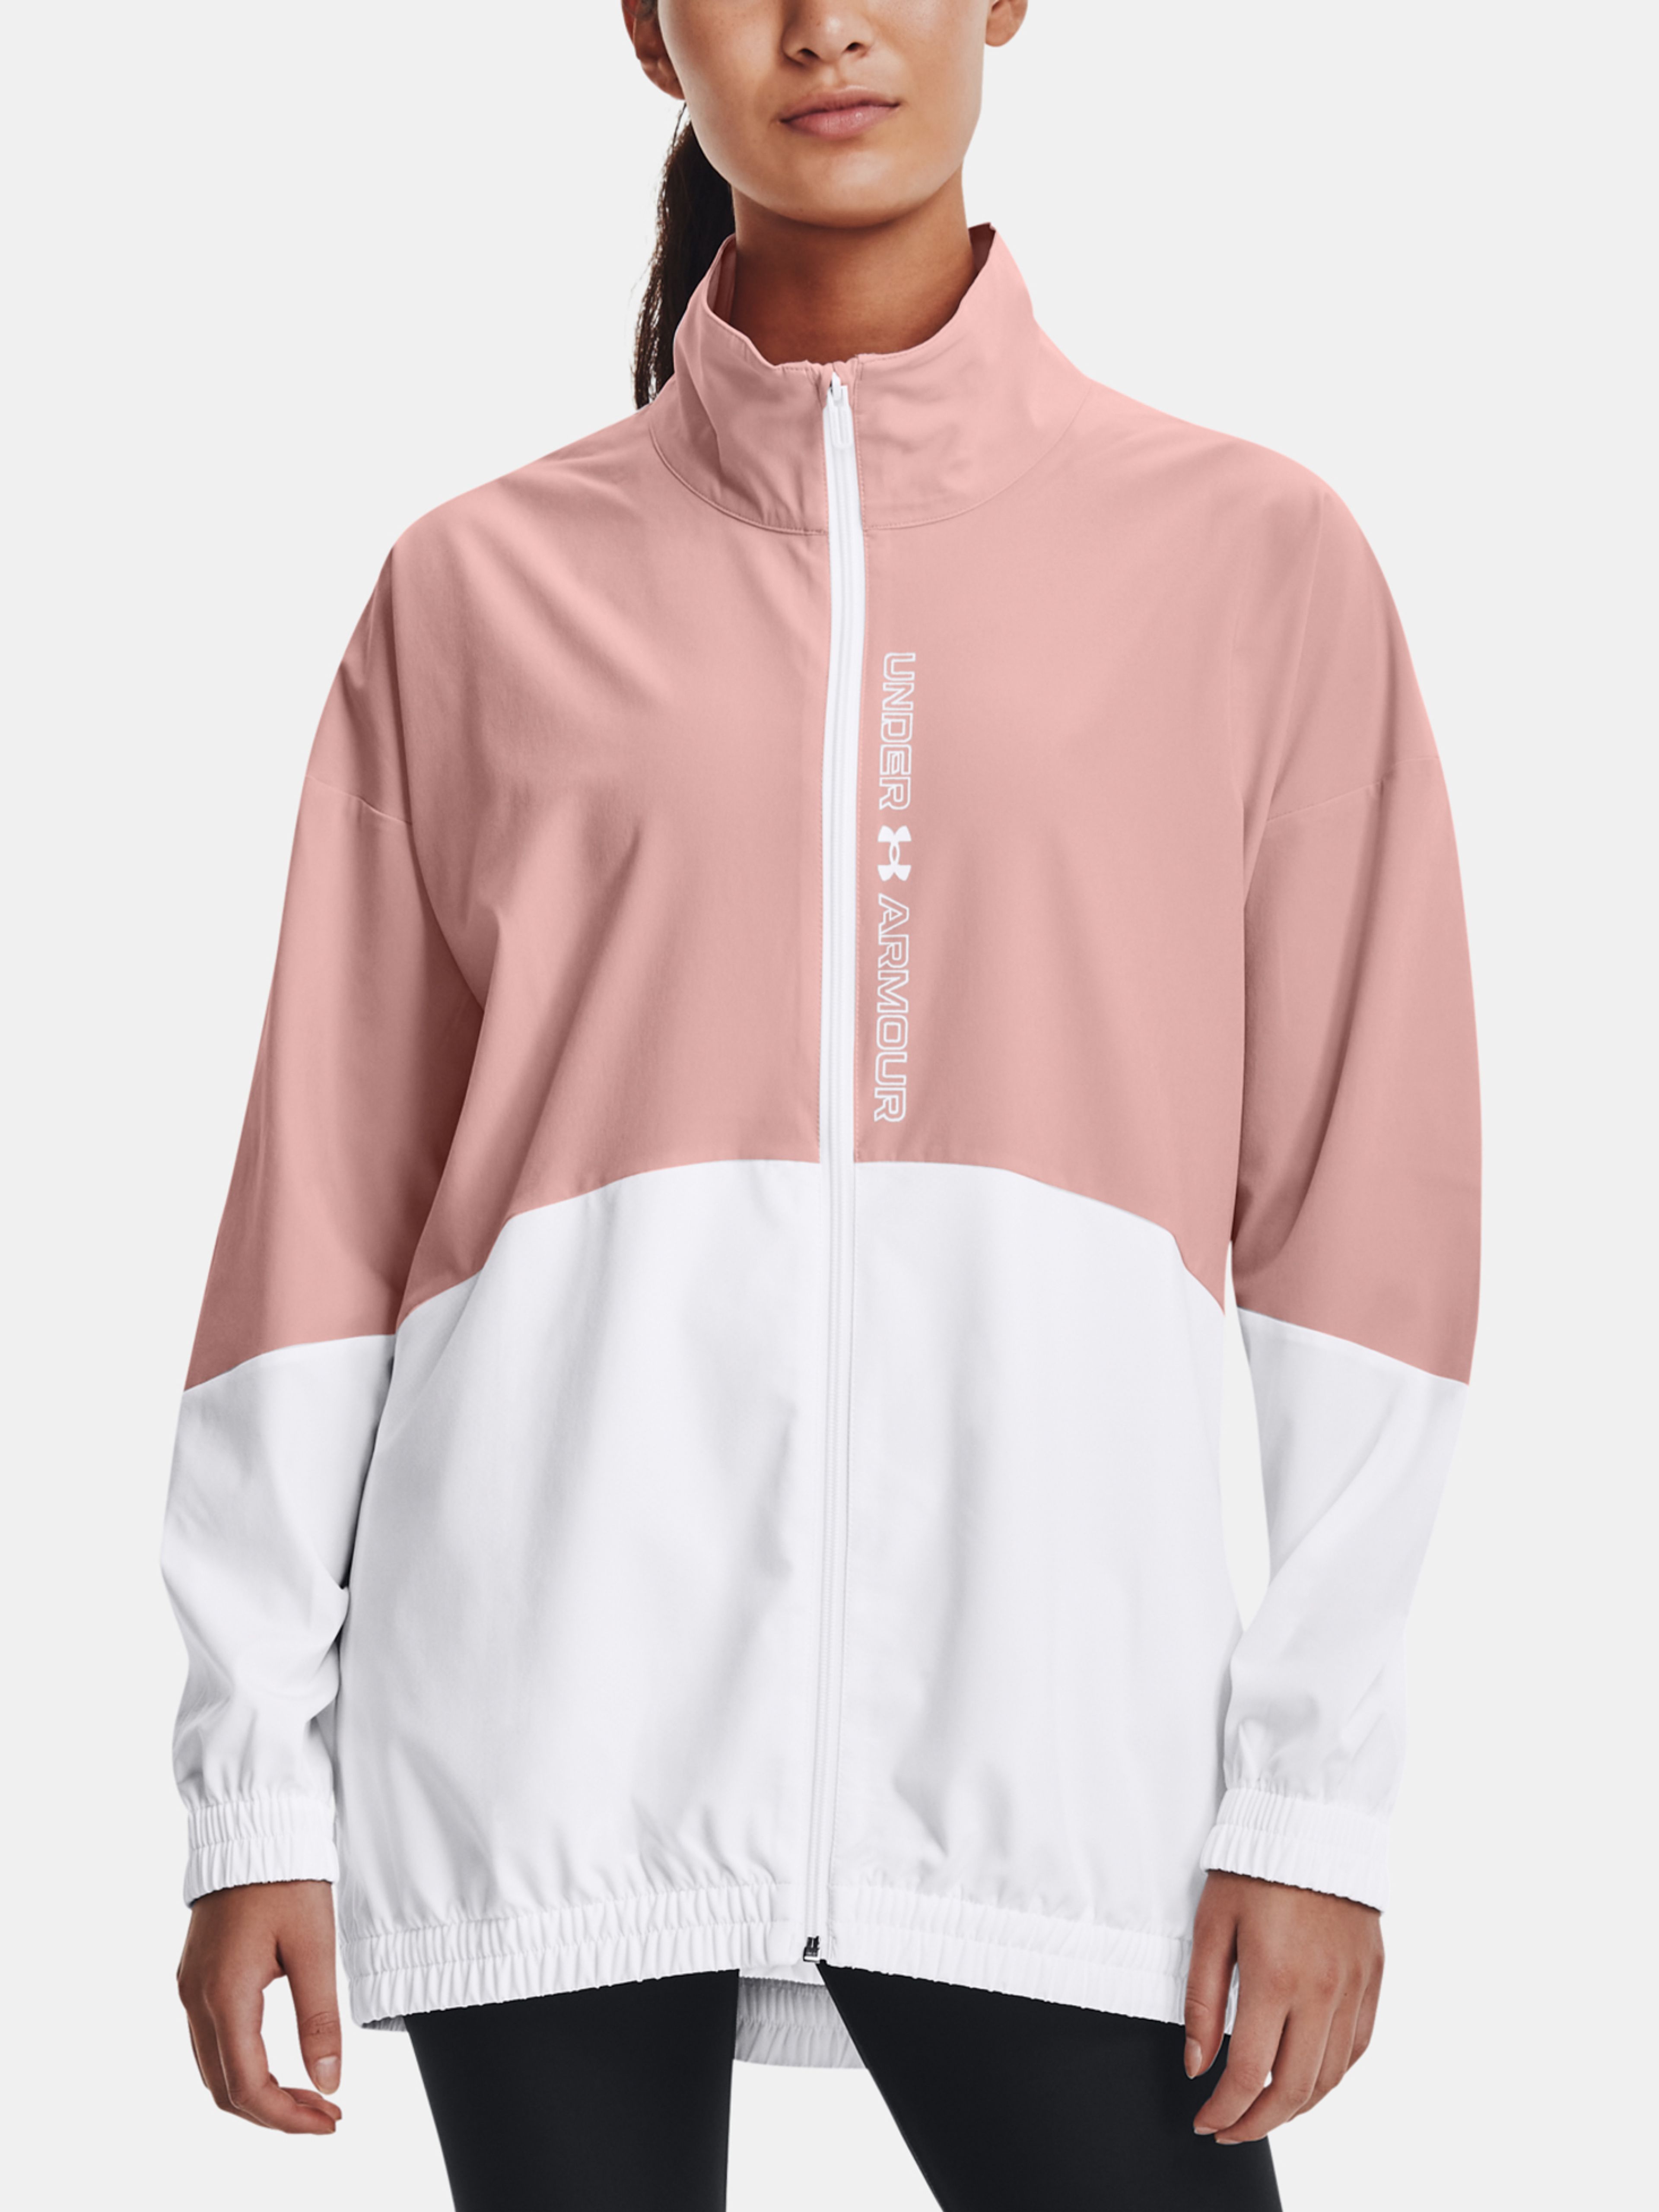  Woven FZ Jacket, white - women's jacket - UNDER ARMOUR -  49.70 € - outdoorové oblečení a vybavení shop